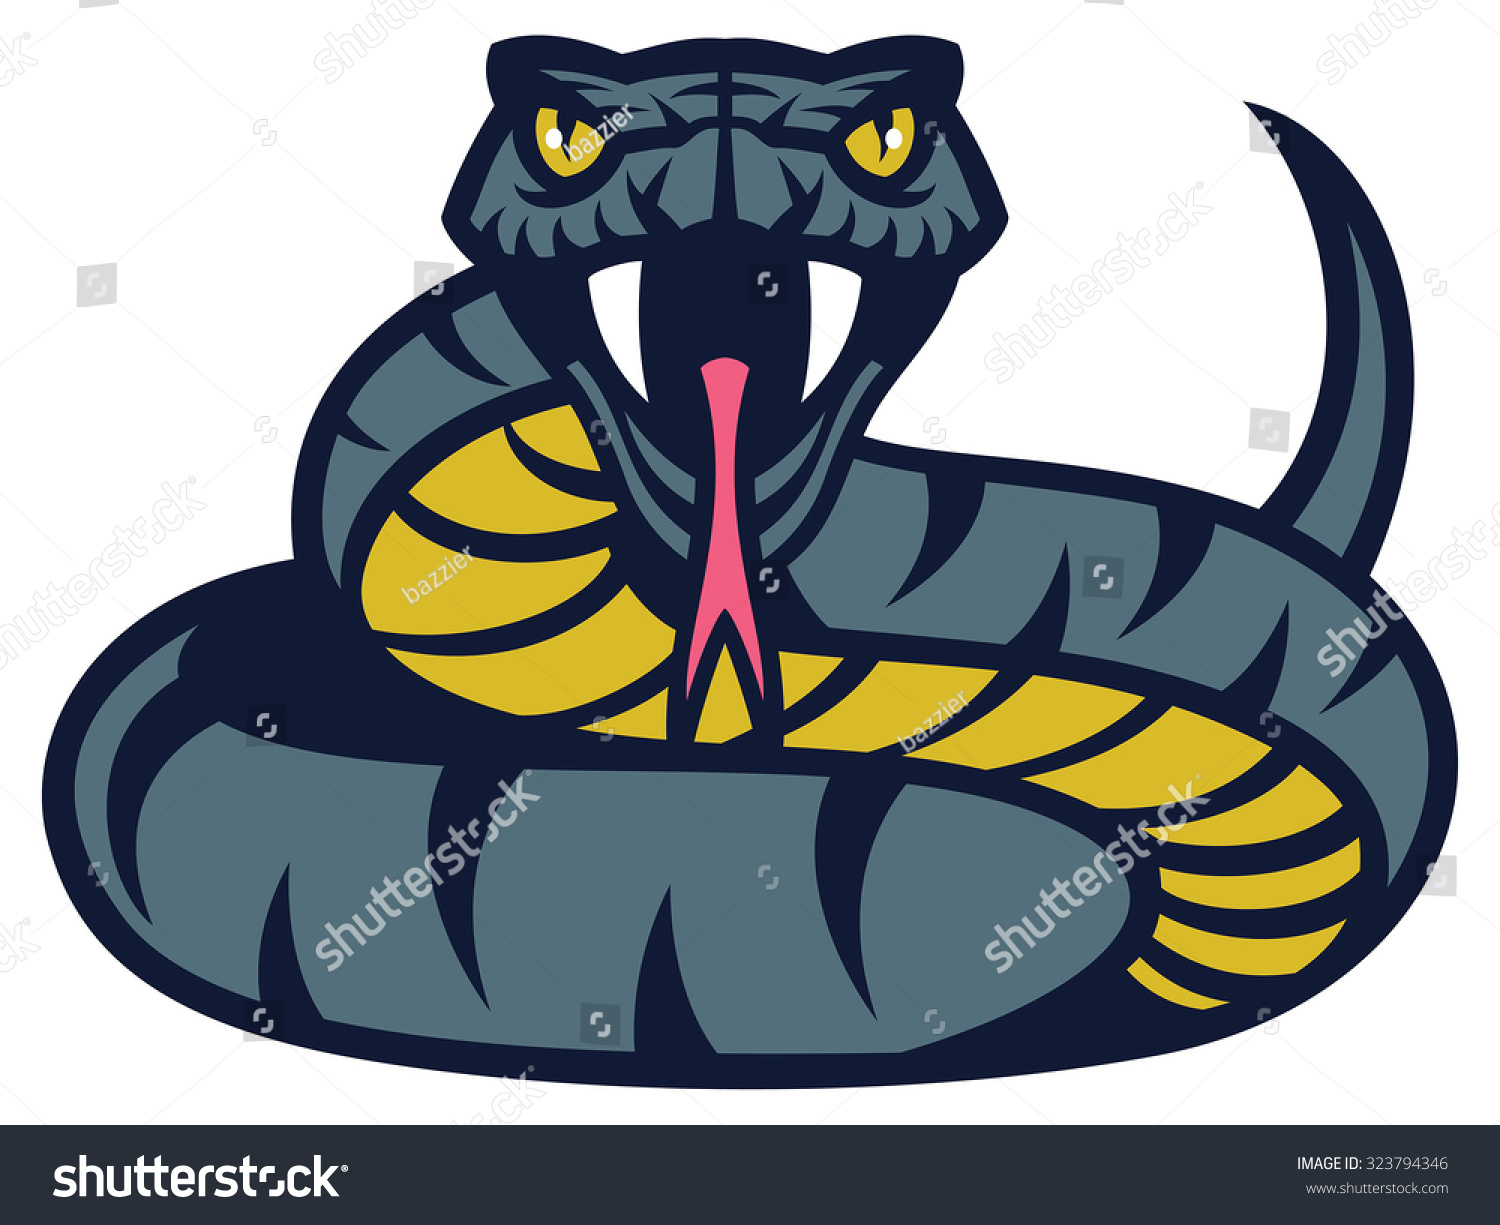 Viper Snake Stock Vector 323794346 - Shutterstock